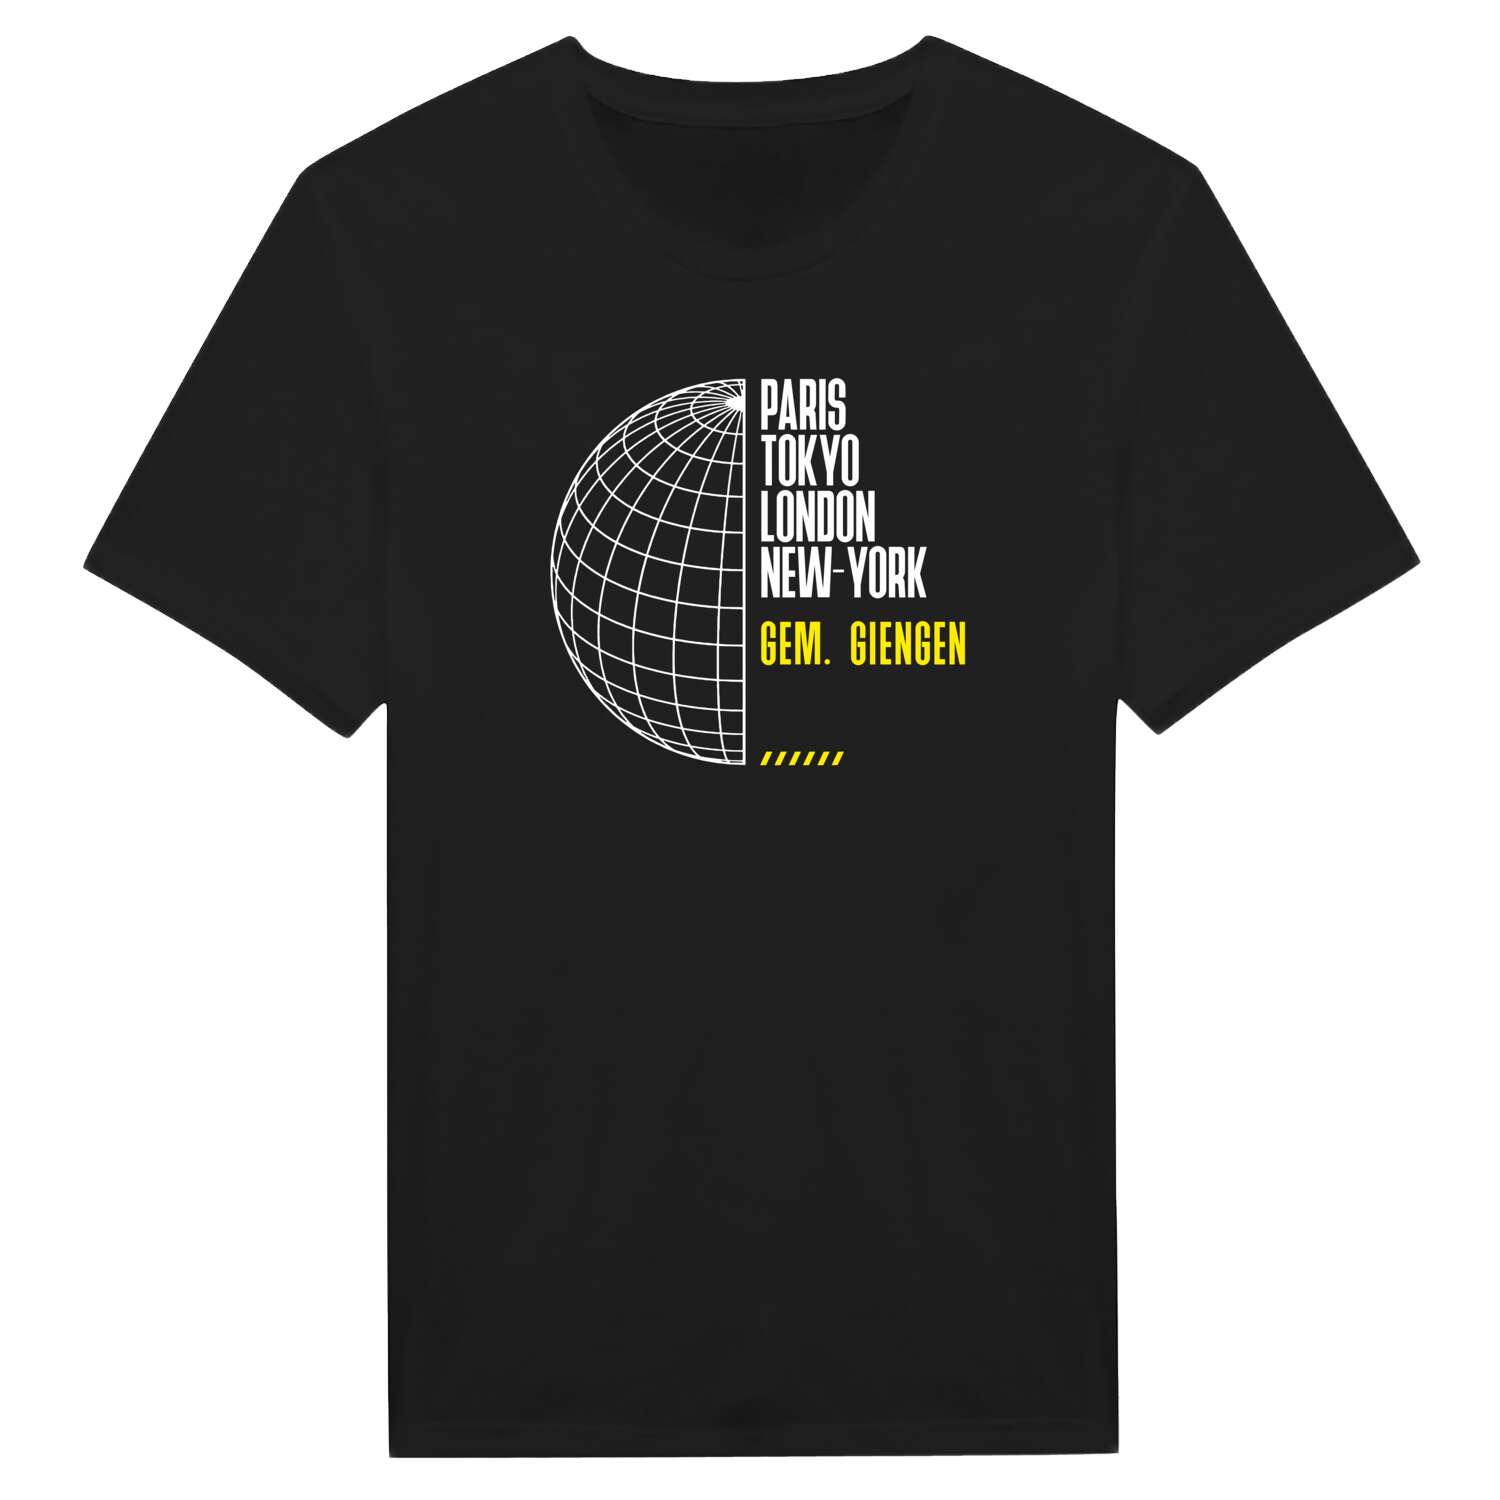 Gem. Giengen T-Shirt »Paris Tokyo London«